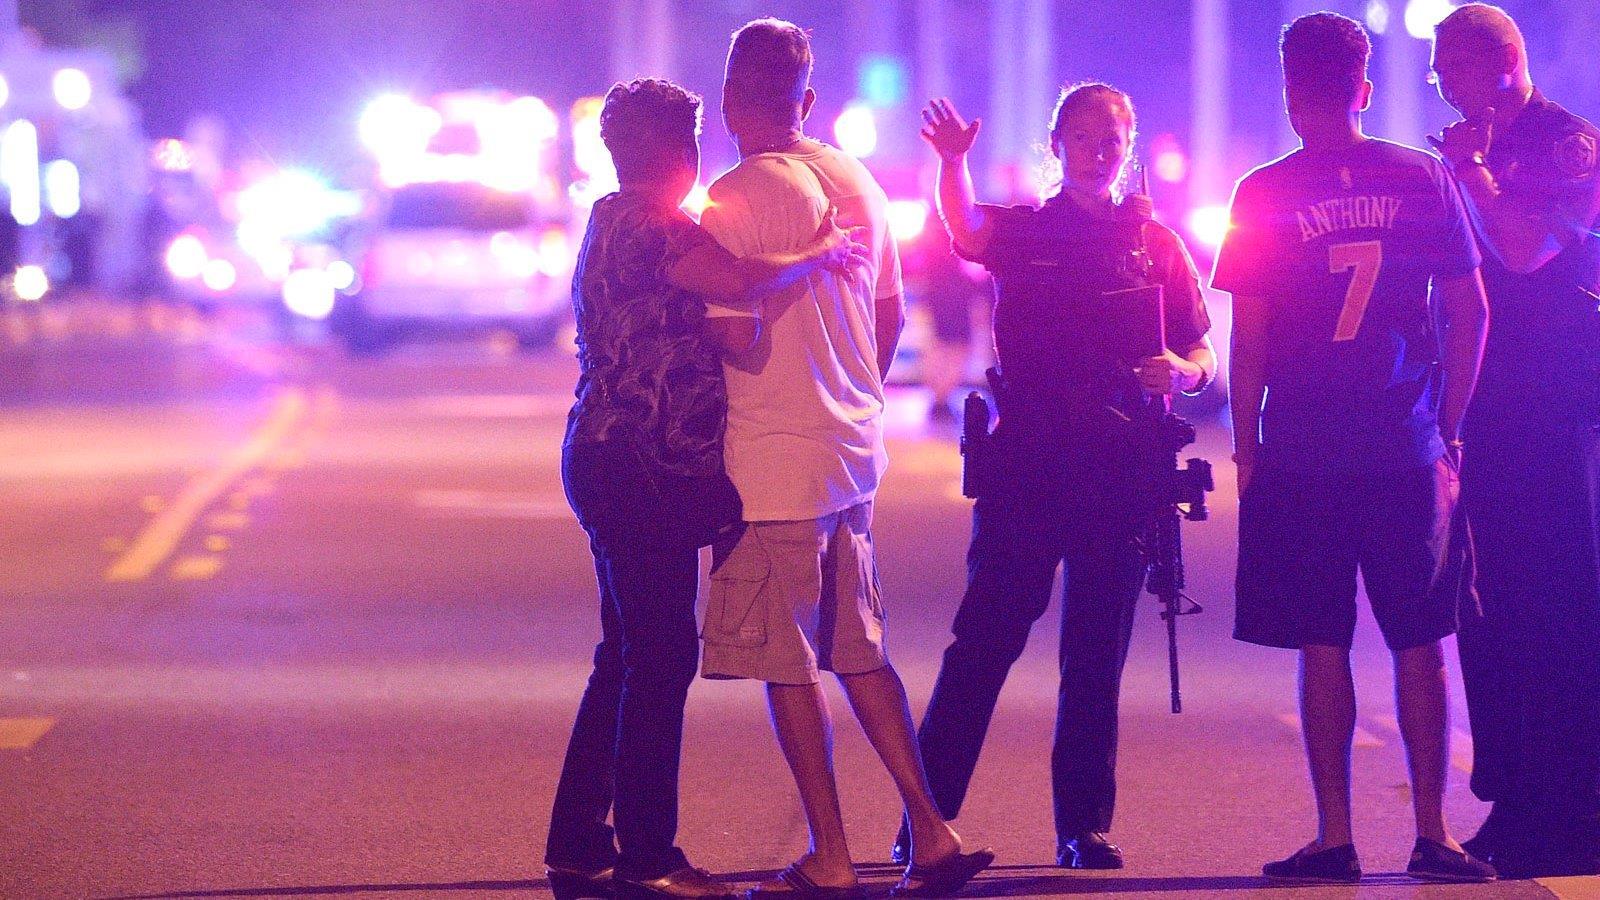 Orlando reignites debate over how to combat radical Islam